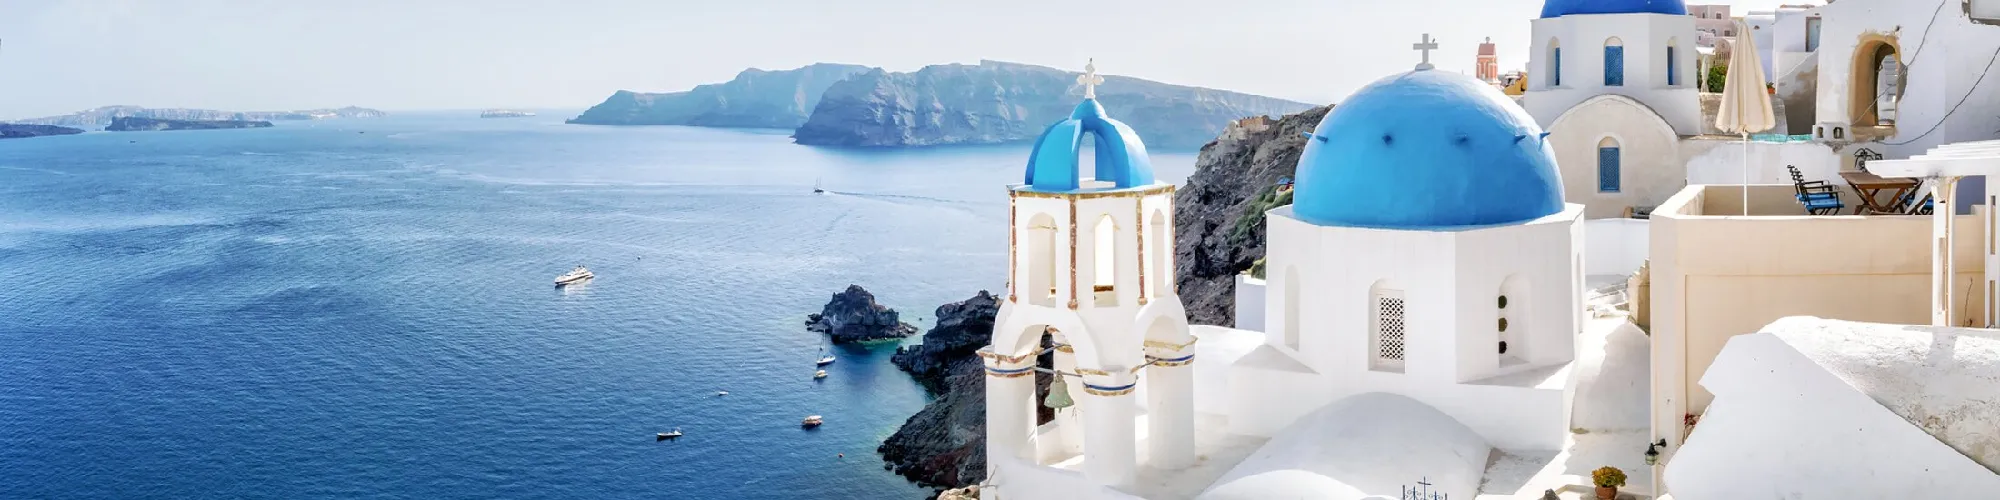 Pauschalreisen nach Griechenland background image